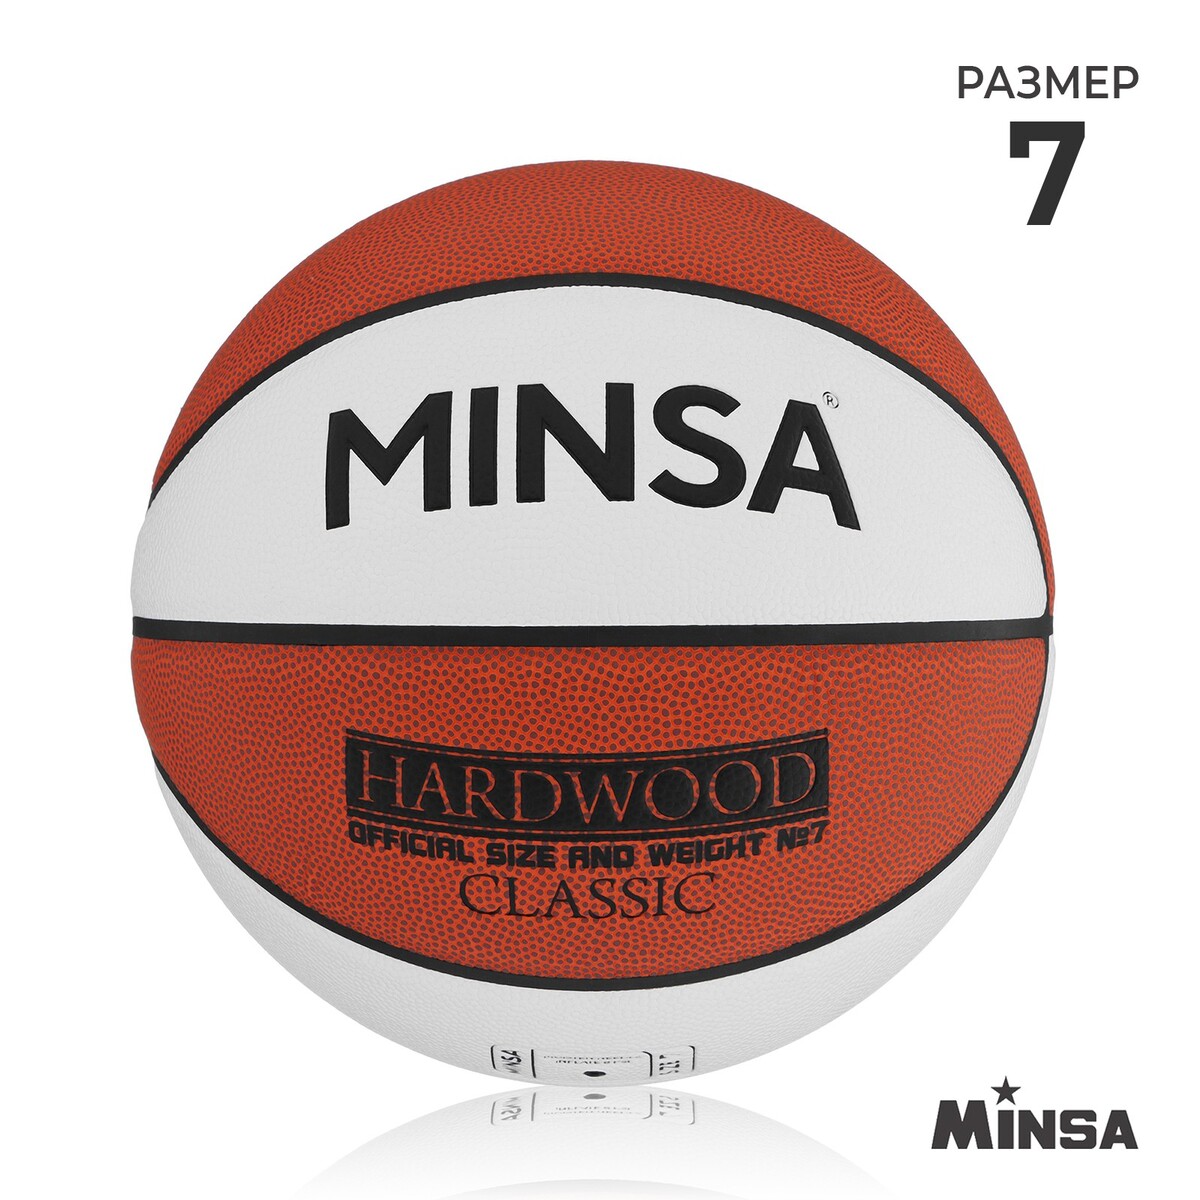 Баскетбольный мяч minsa hardwood classic, pu, клееный, 8 панелей, р. 7 мяч баскетбольный minsa пвх клееный 8 панелей р 5